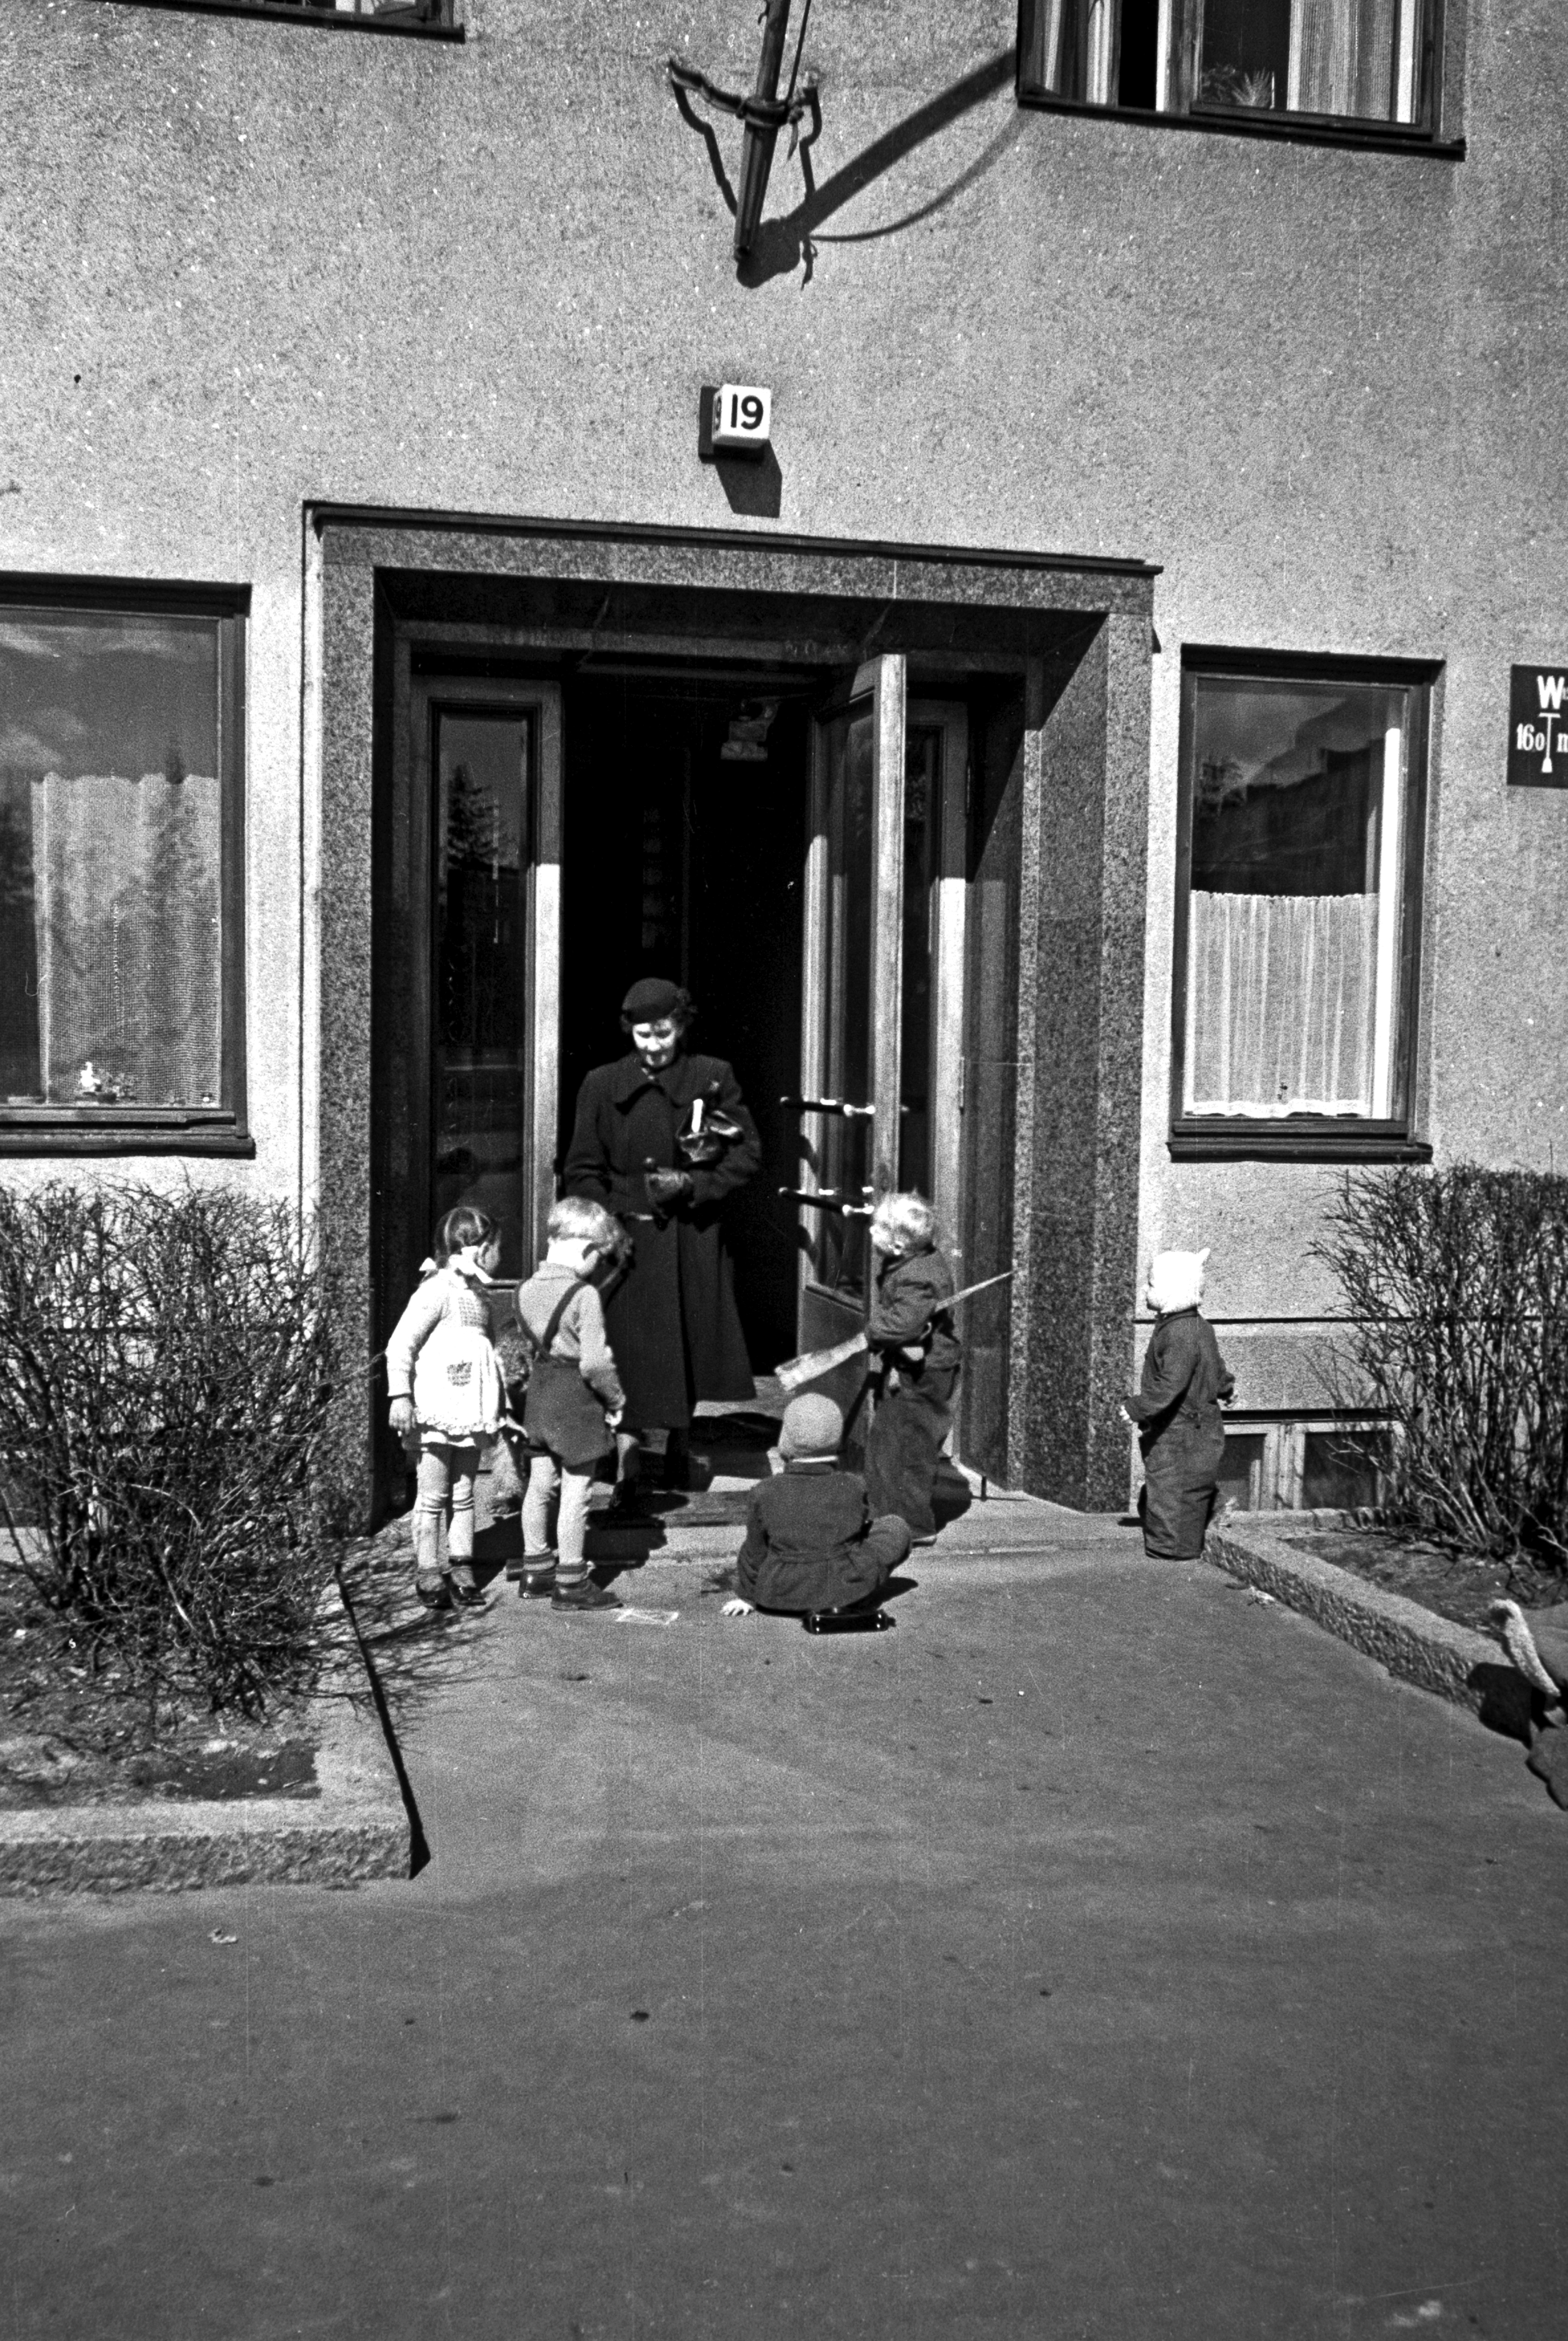 Lapsia ja nainen Humalistonkatu 19 ovella.